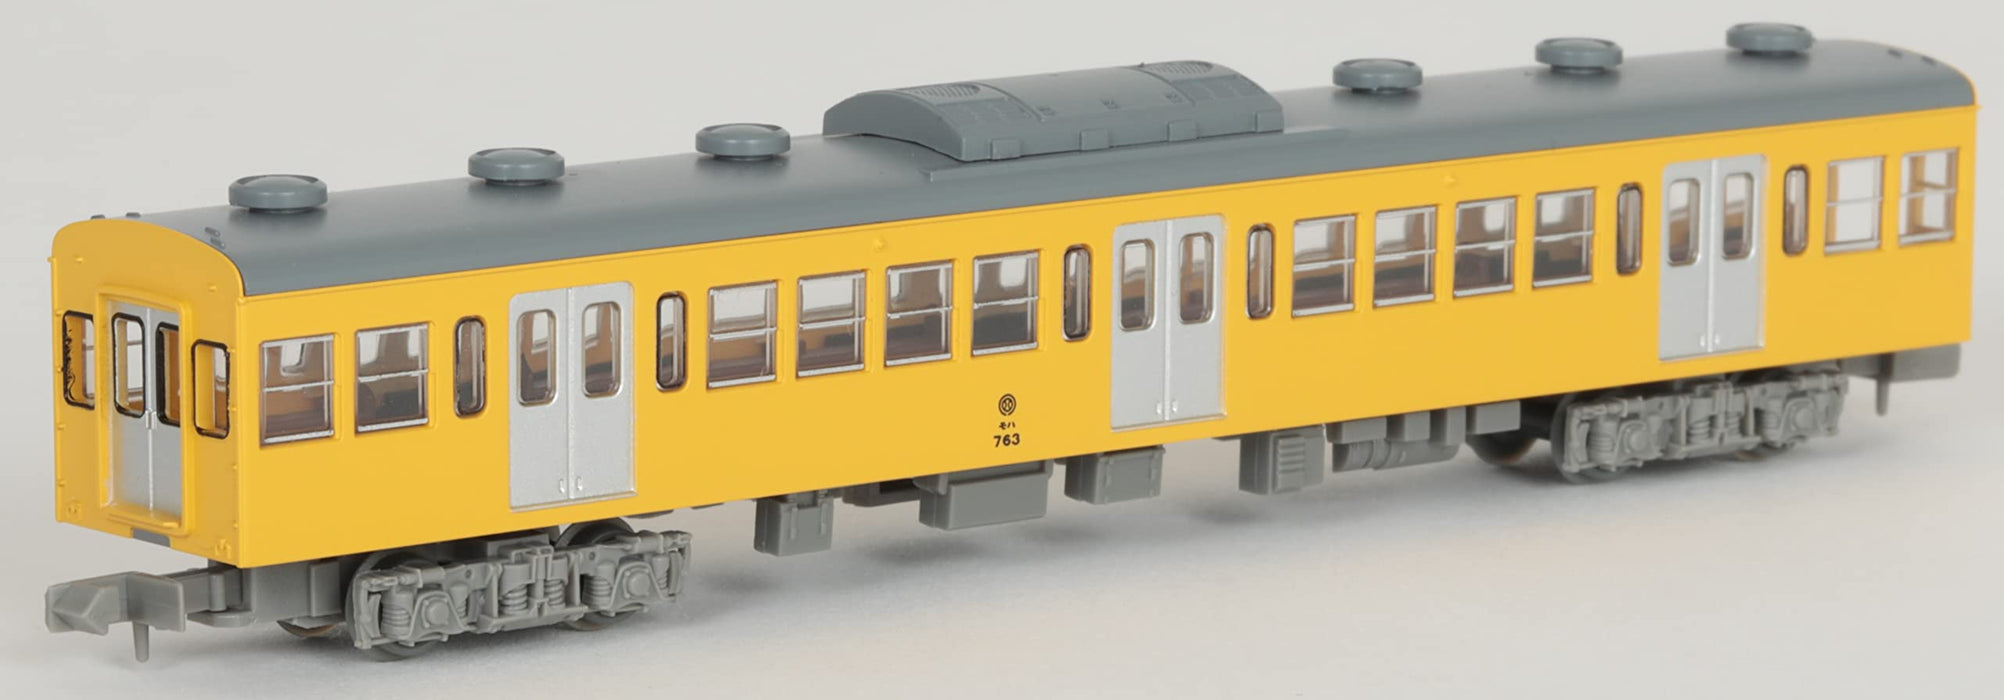 Tomytec Japan Railway Collection Iron Series 701 1763 4-Car Set Diorama 317241